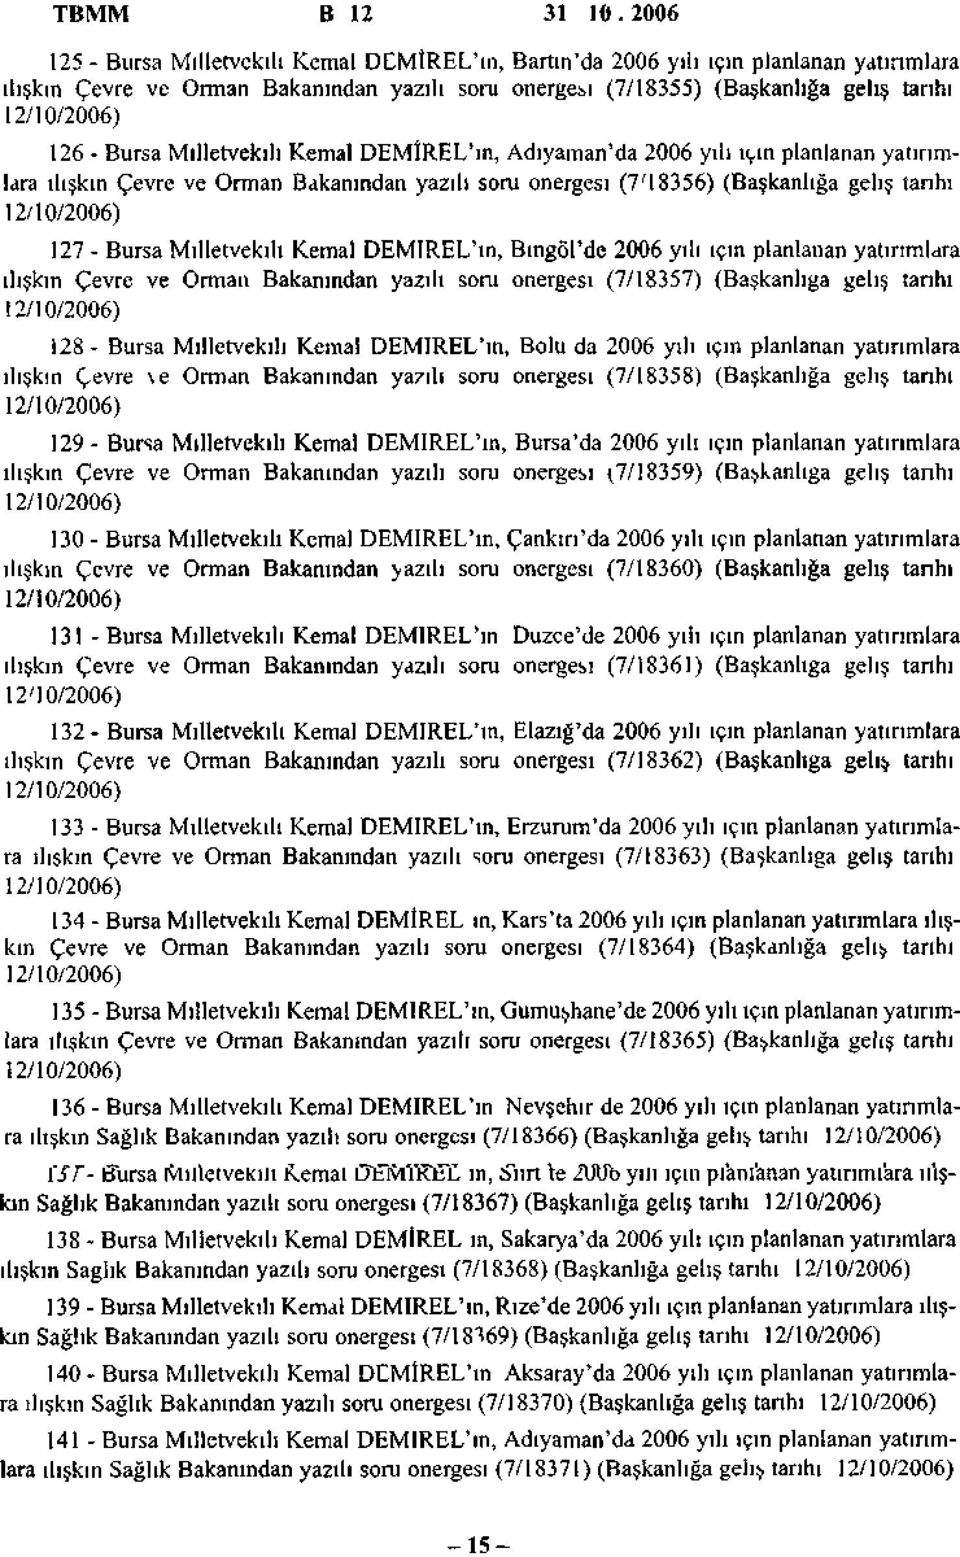 Milletvekili Kemal DEMÎREL'ın, Adıyaman'da 2006 yılı için planlanan yatırımlara ilişkin Çevre ve Orman Bakanından yazılı soru önergesi (7'I8356) (Başkanlığa geliş tanhı 127 - Bursa Milletvekili Kemal